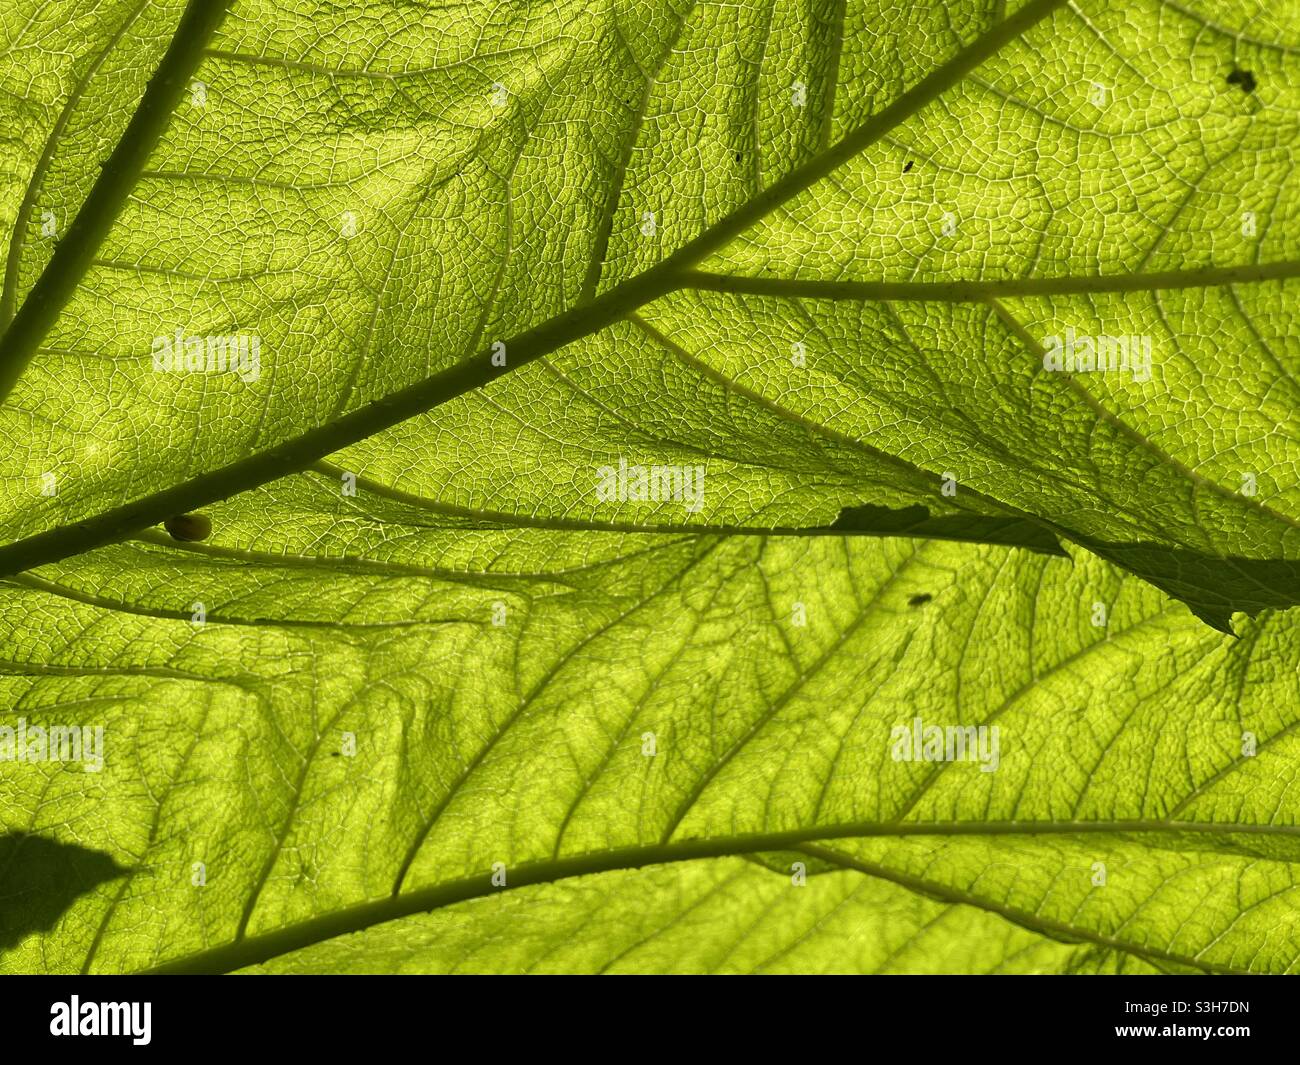 Backlit leaf showing veins within leaf. Stock Photo